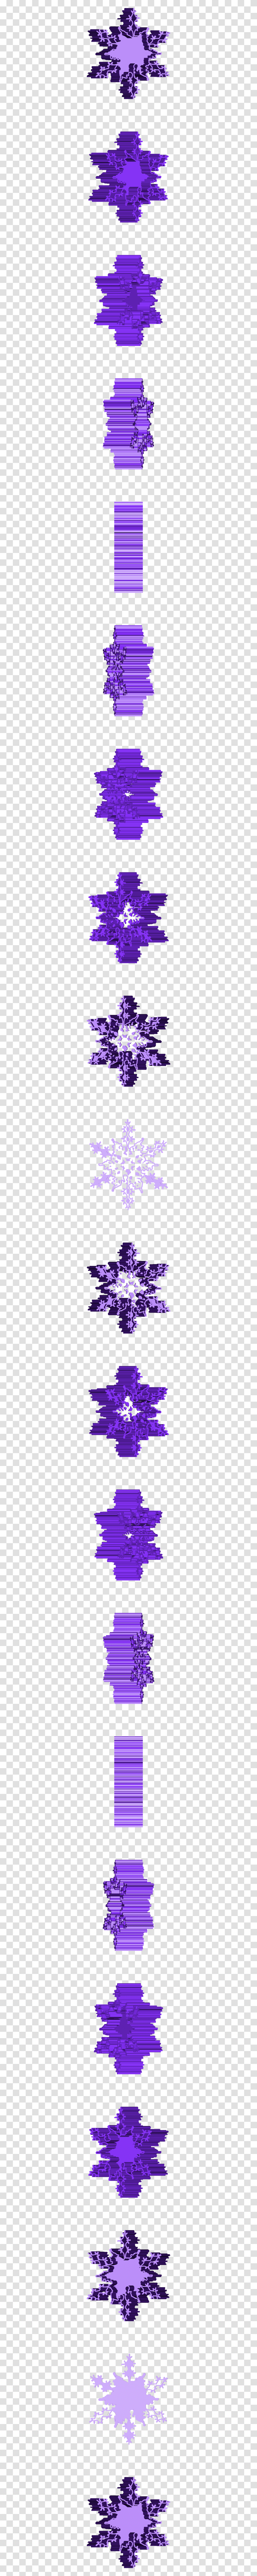 Copo De Nieve, Snowflake Transparent Png